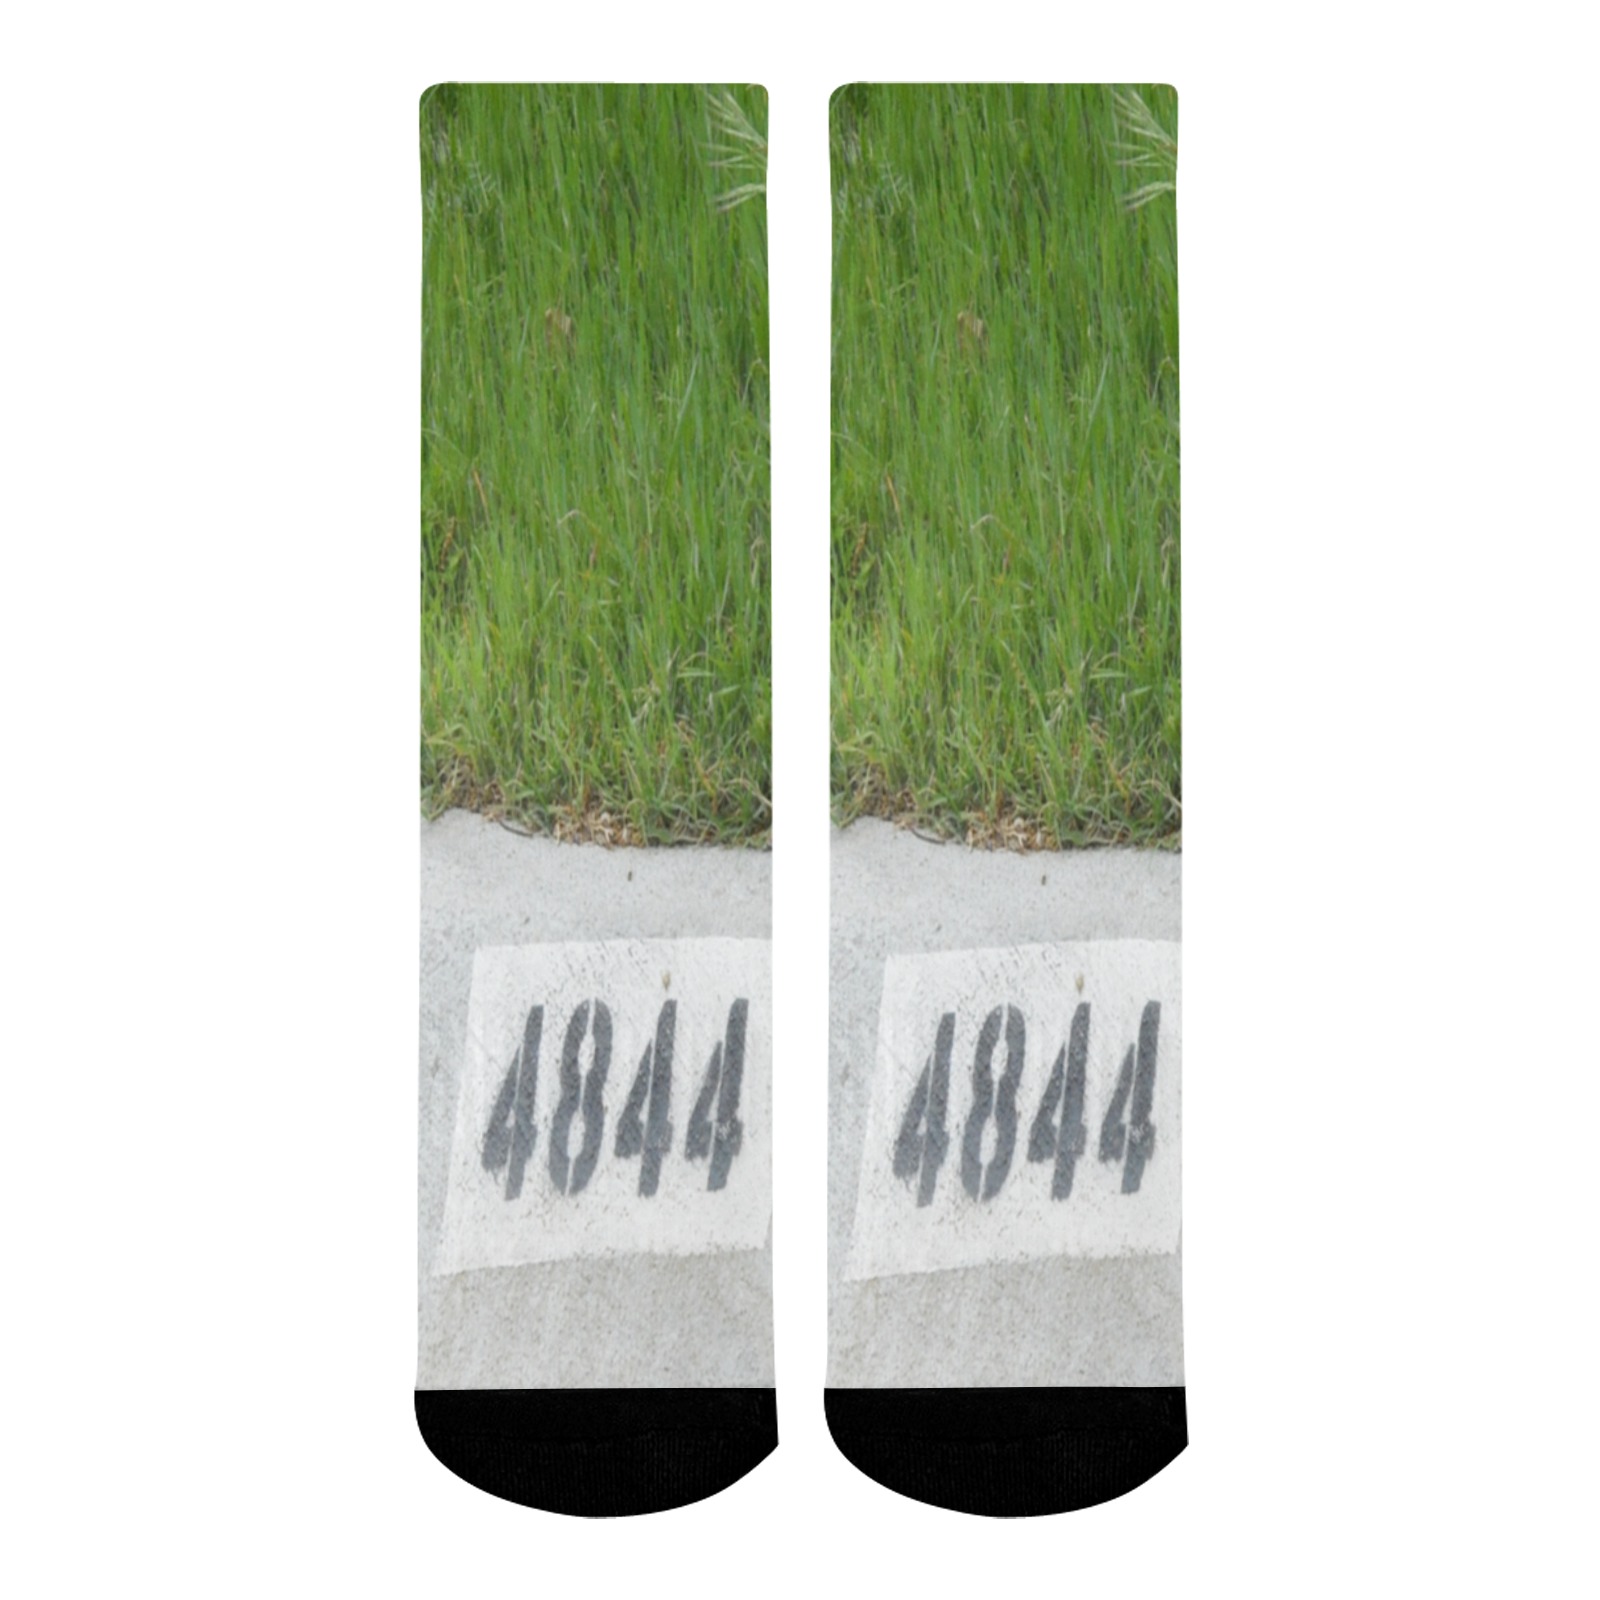 Street Number 4844 Mid-Calf Socks (Black Sole)